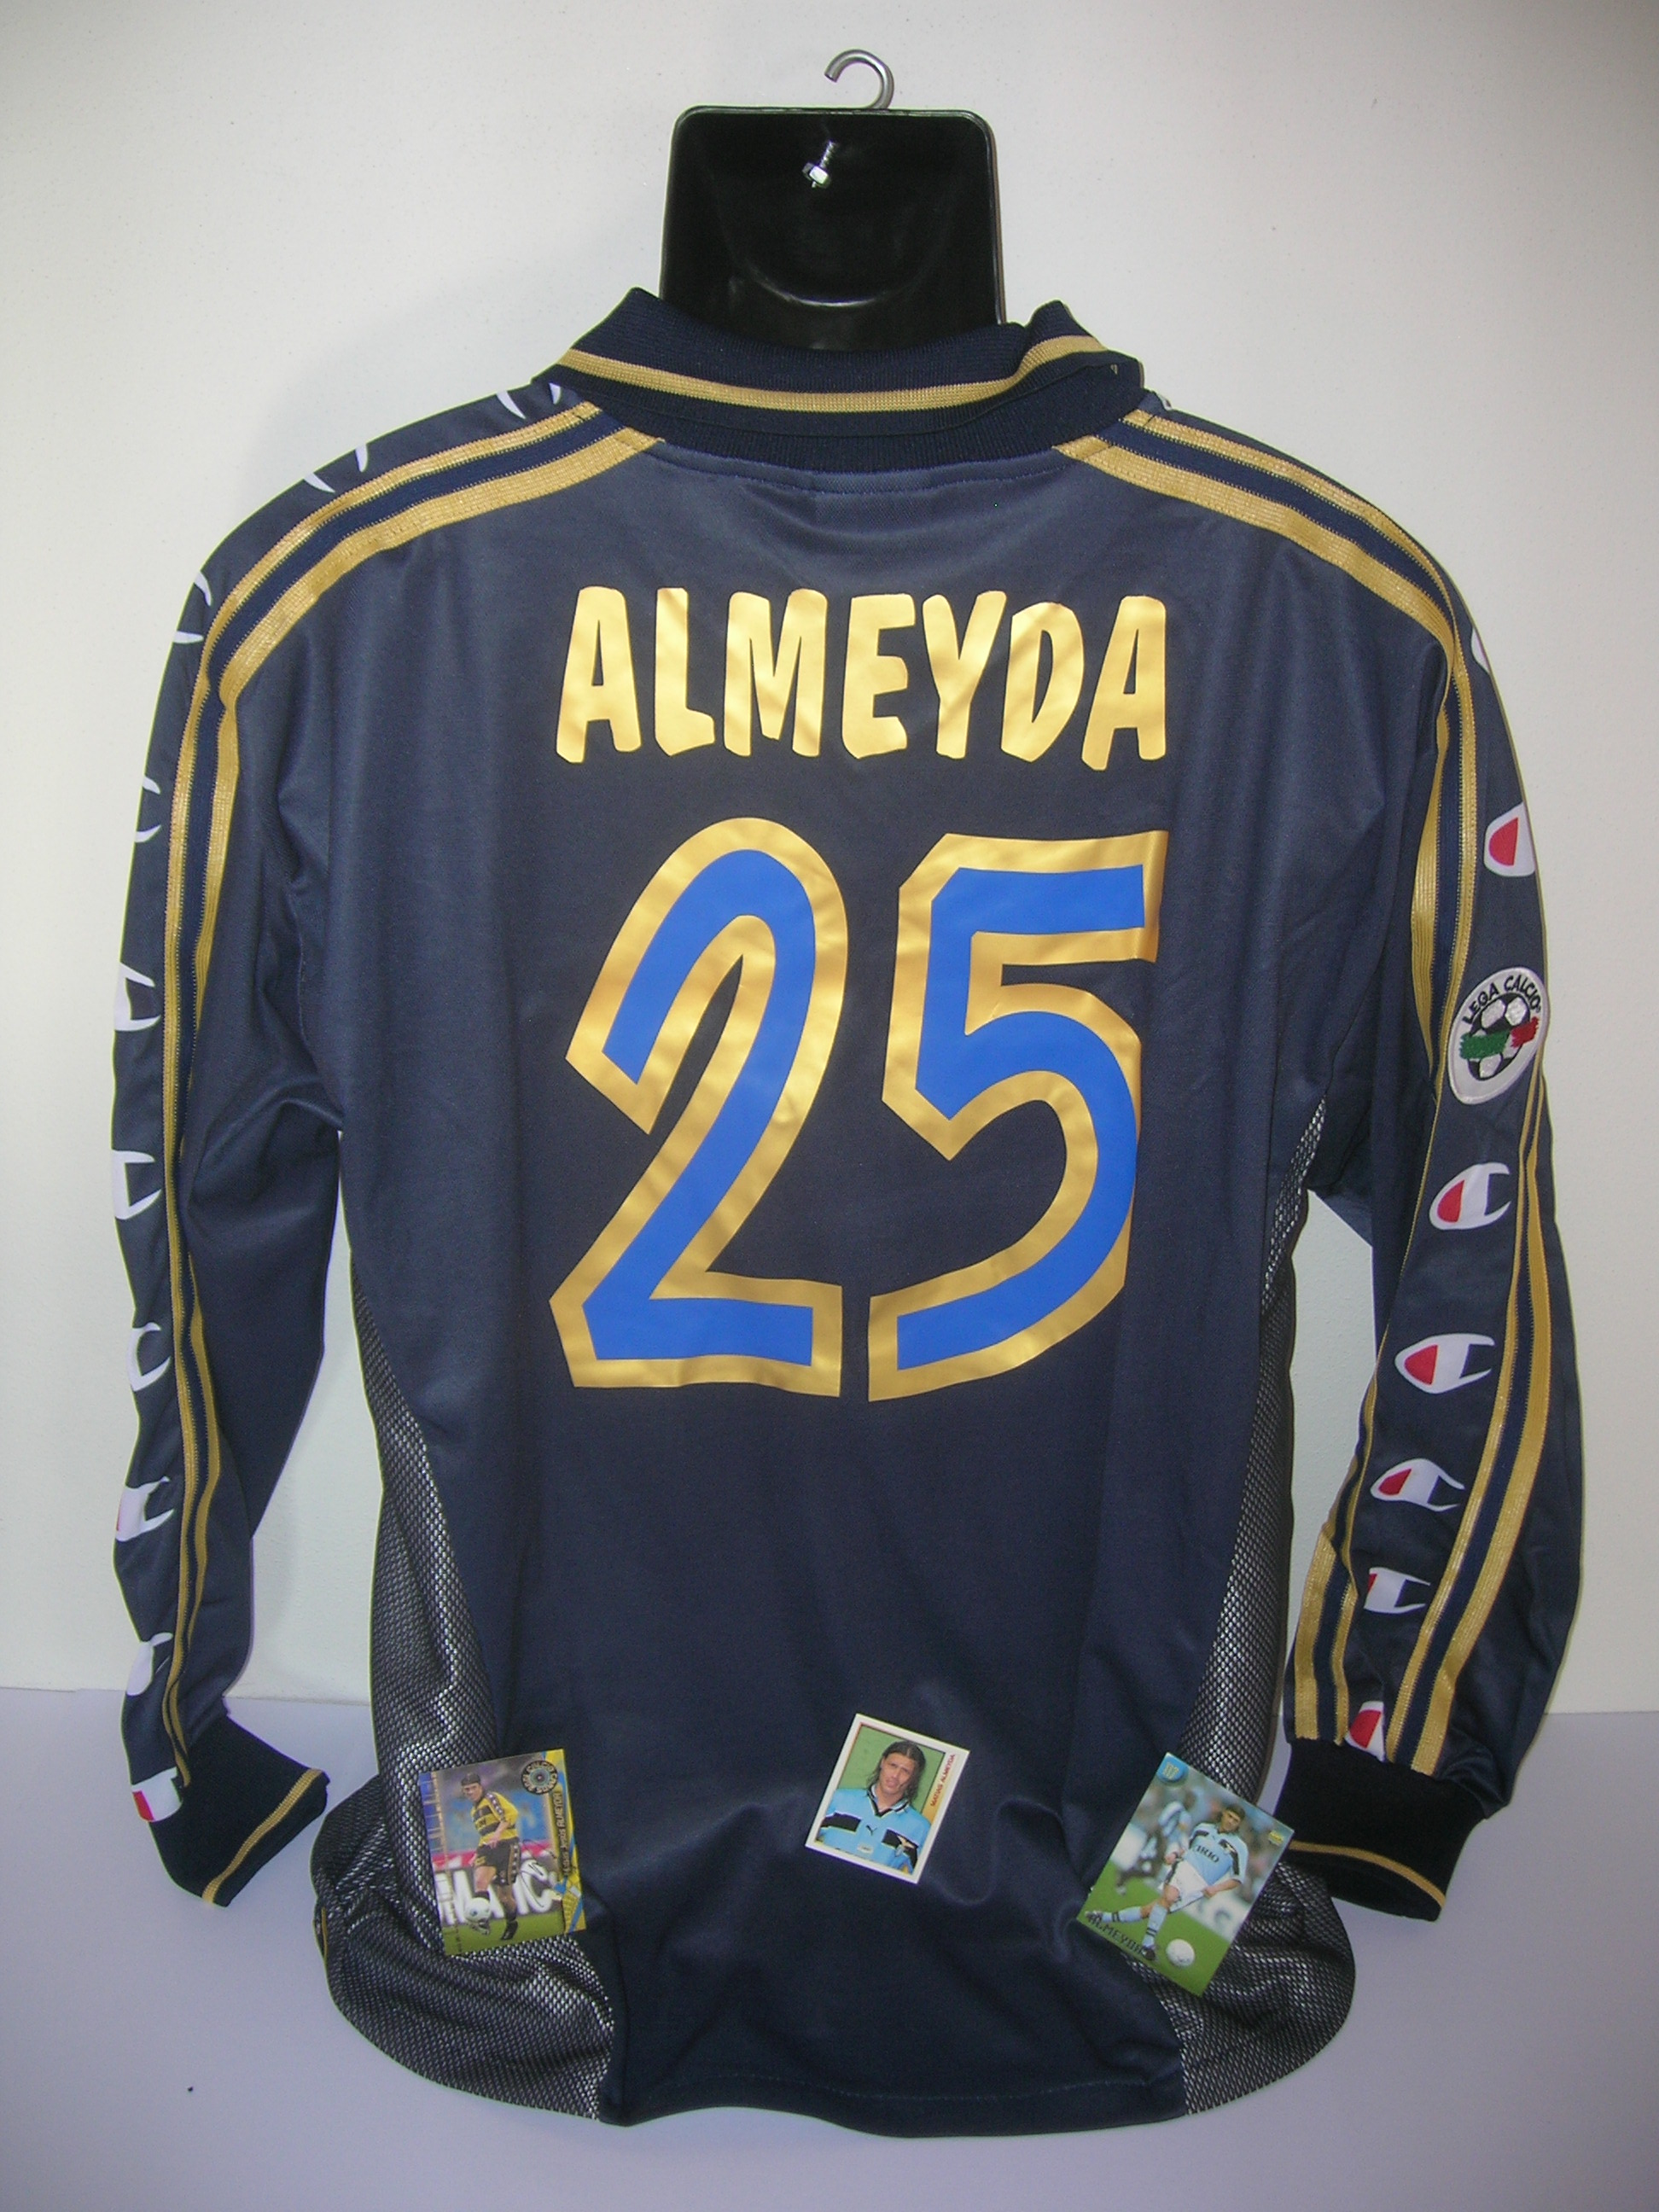 Parma  Almeyda  25  B-2